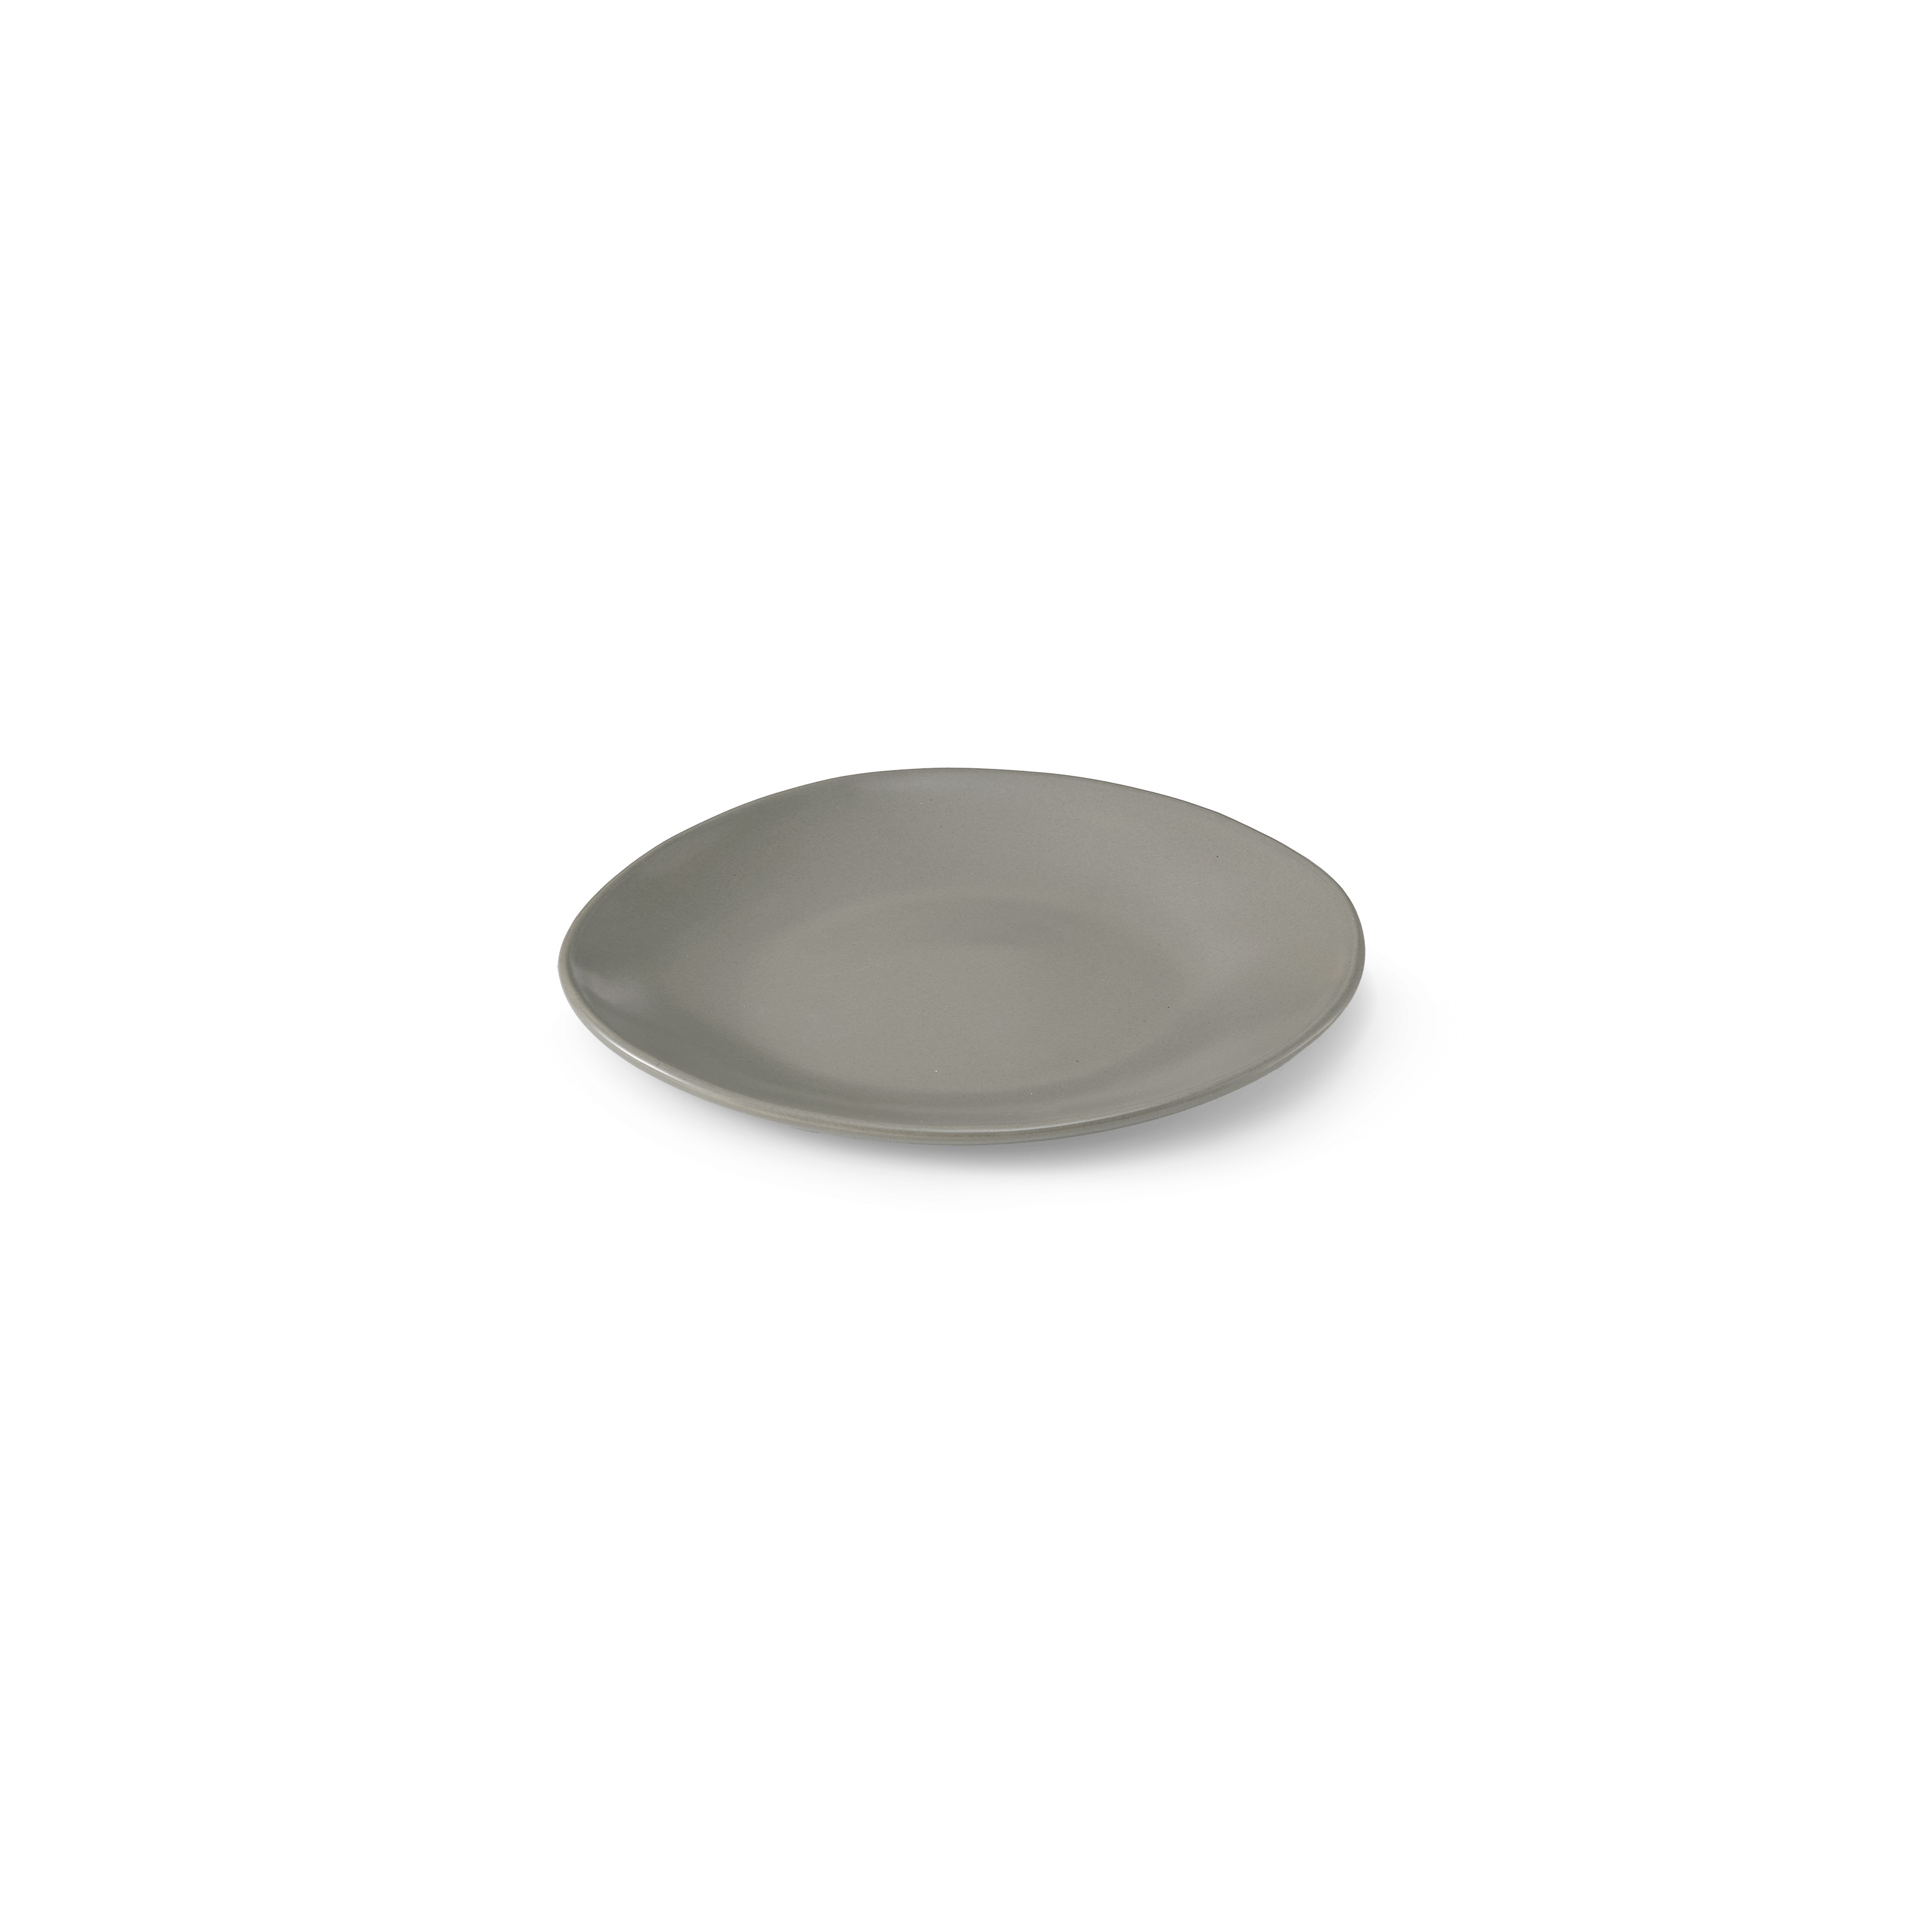 Tonkin Round Plate S: Light grey